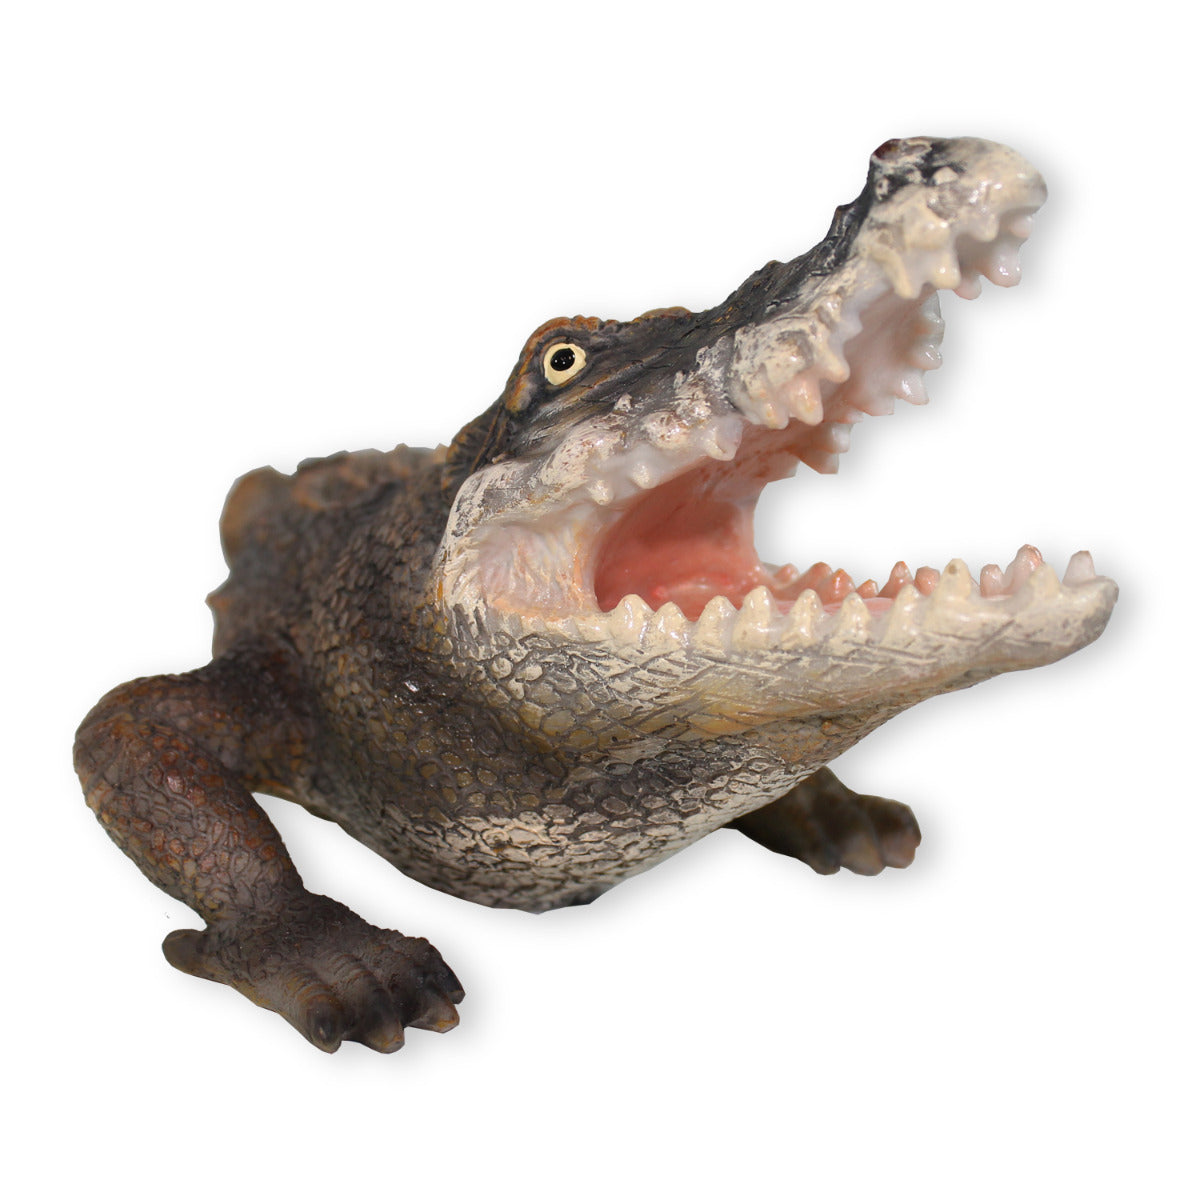 Krokodil Figur Tierfigur Tierfigur Reptil Dekofigur Gartenfigur 37cm